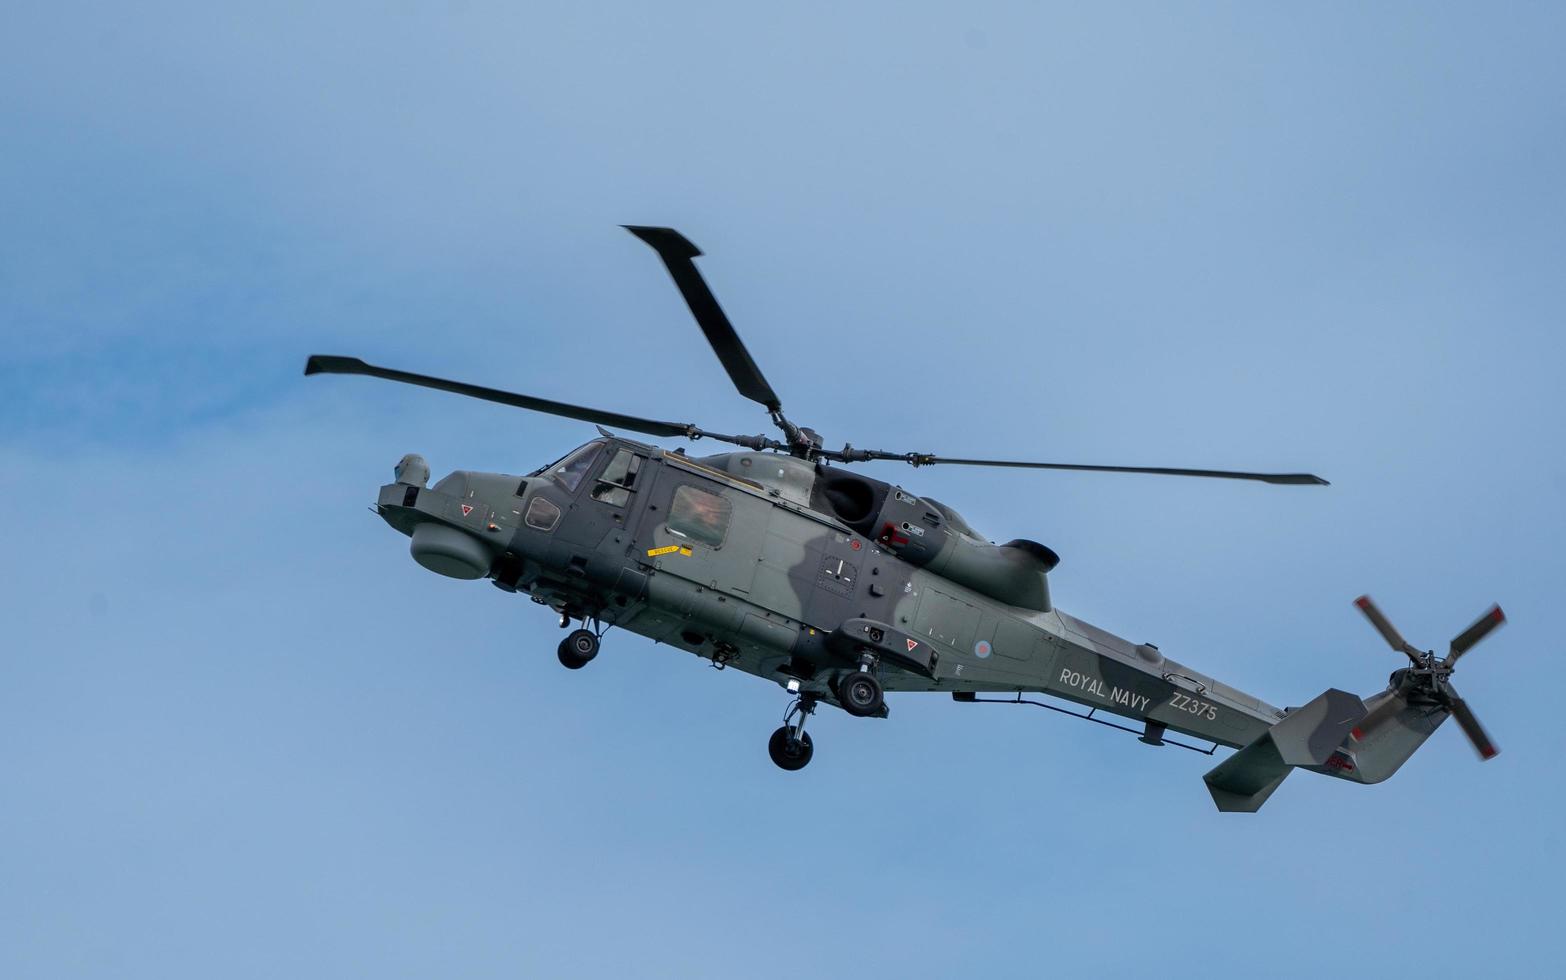 festival de l'air de bournemouth en hélicoptère lynx wildcat 2022 photo